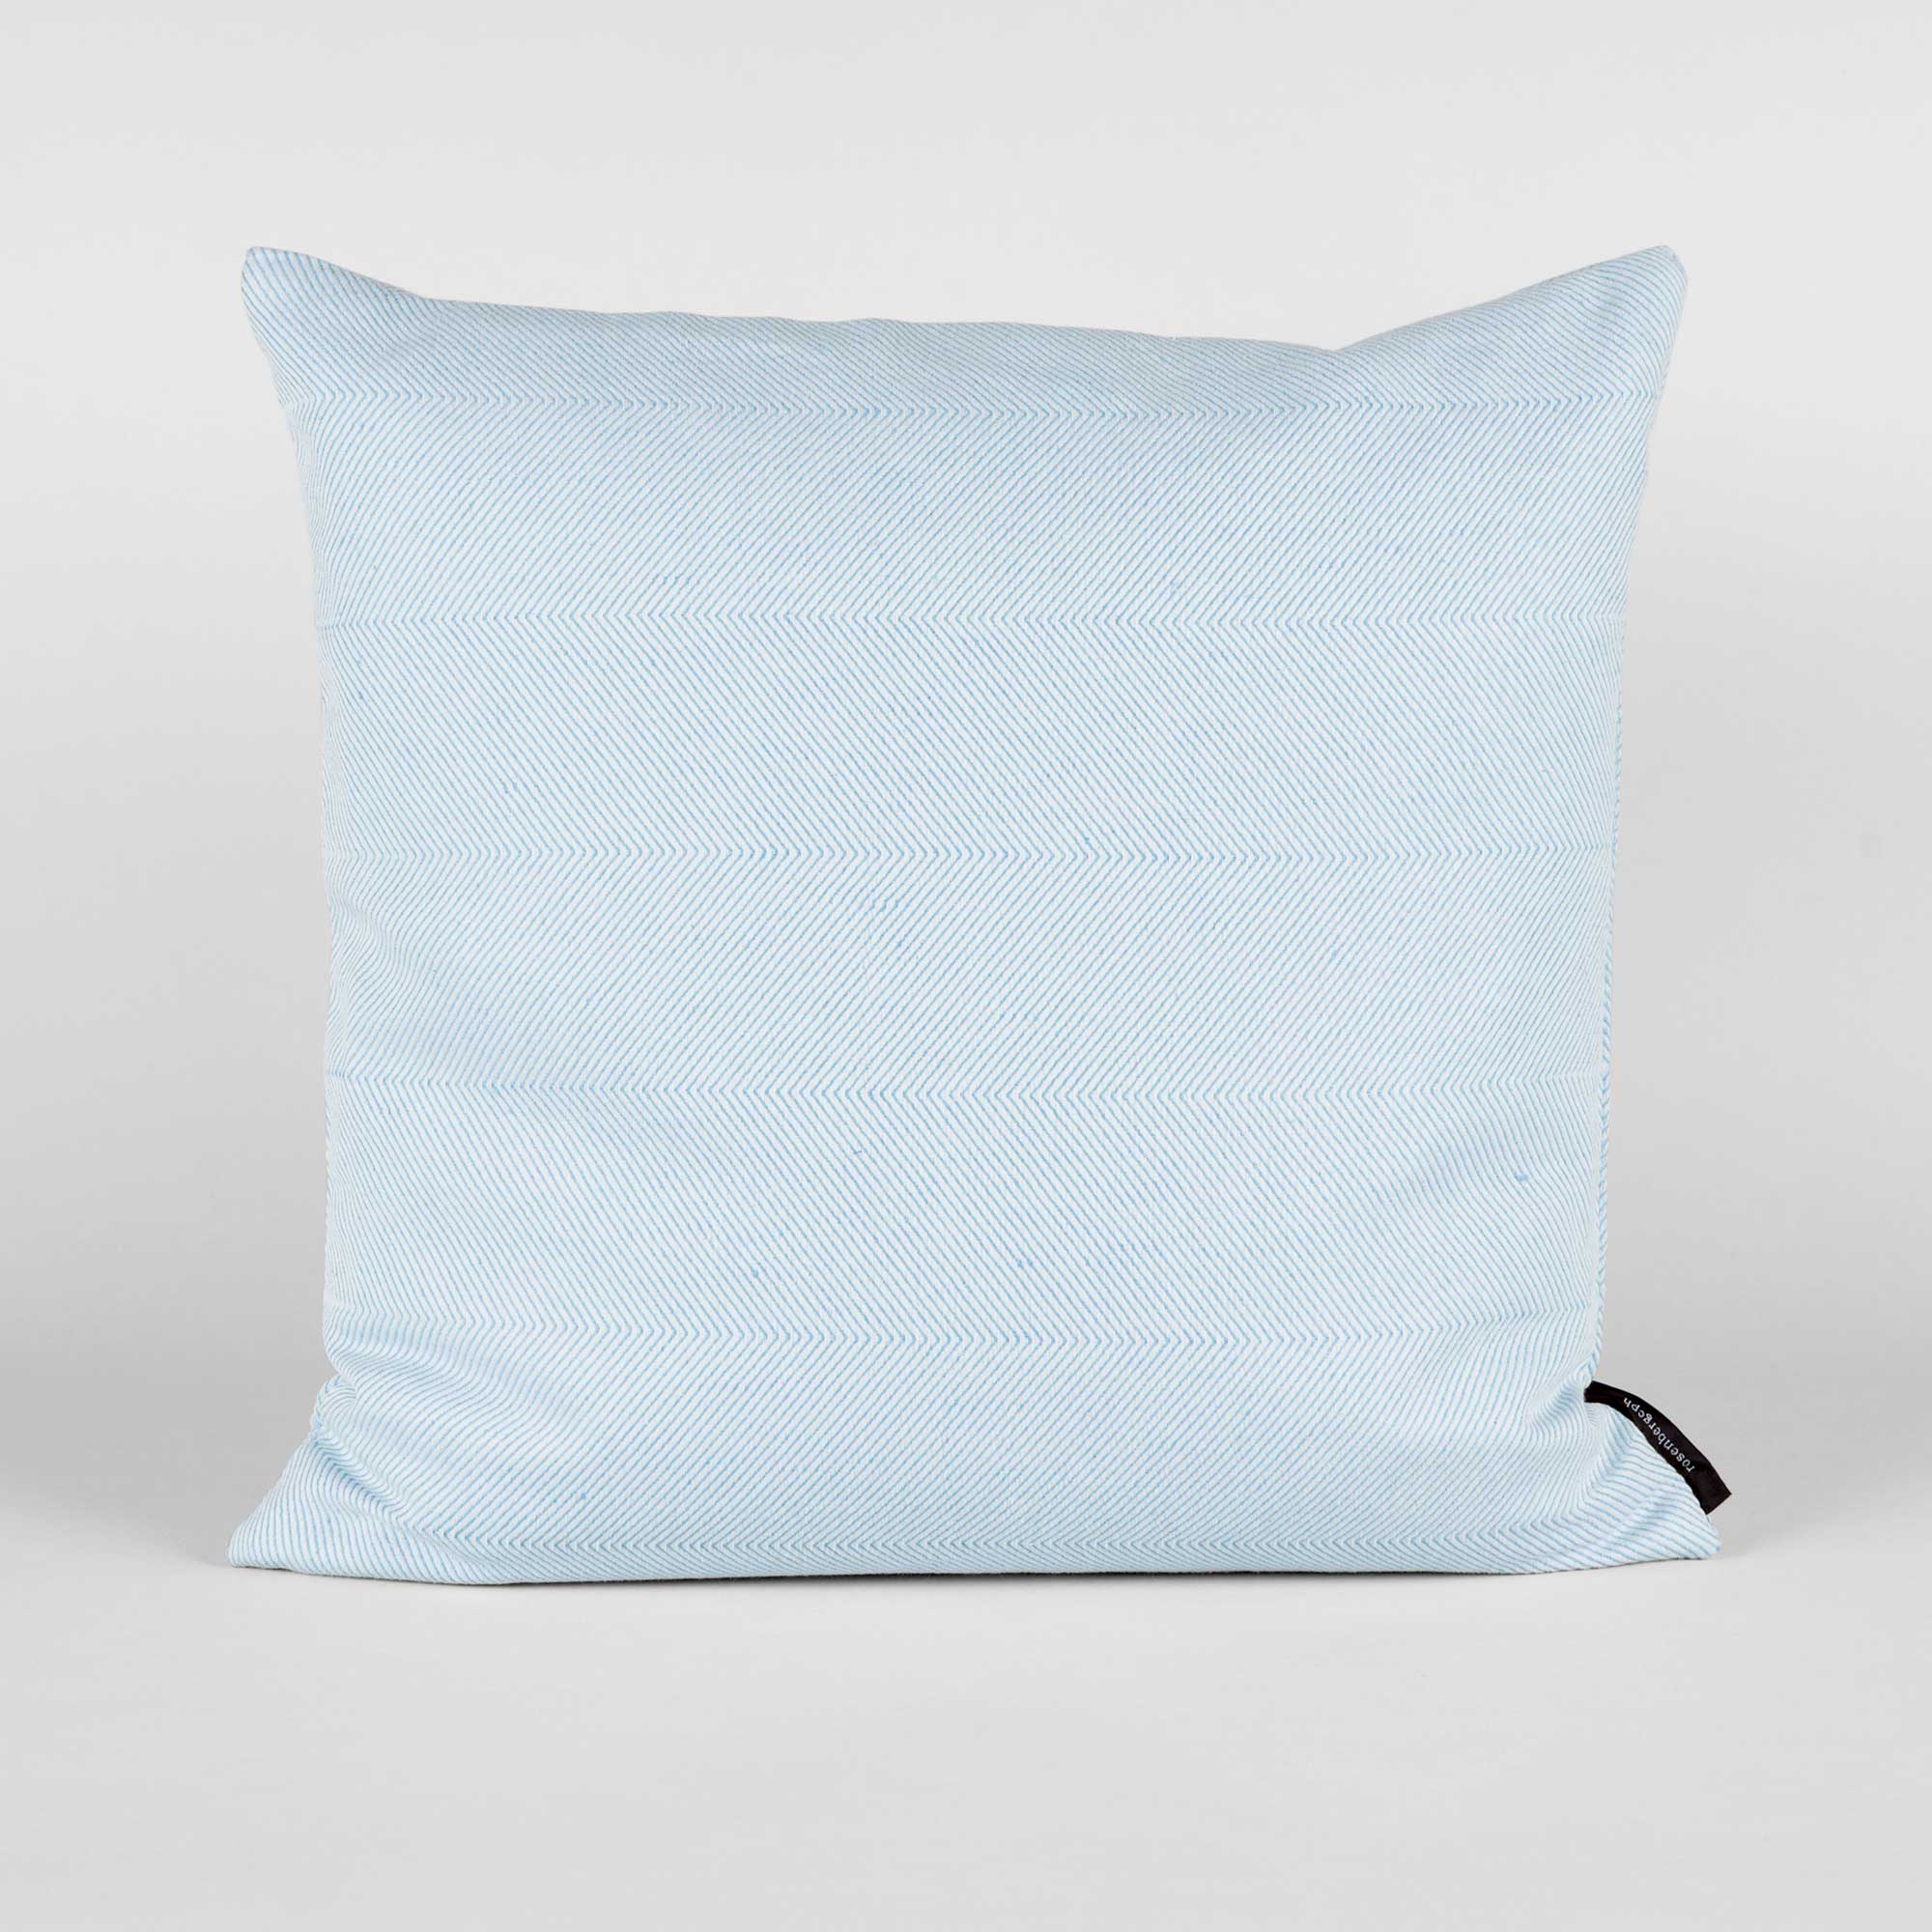 Square cushion linen/cotton Light Sky Blue, design by Anne Rosenberg, RosenbergCph